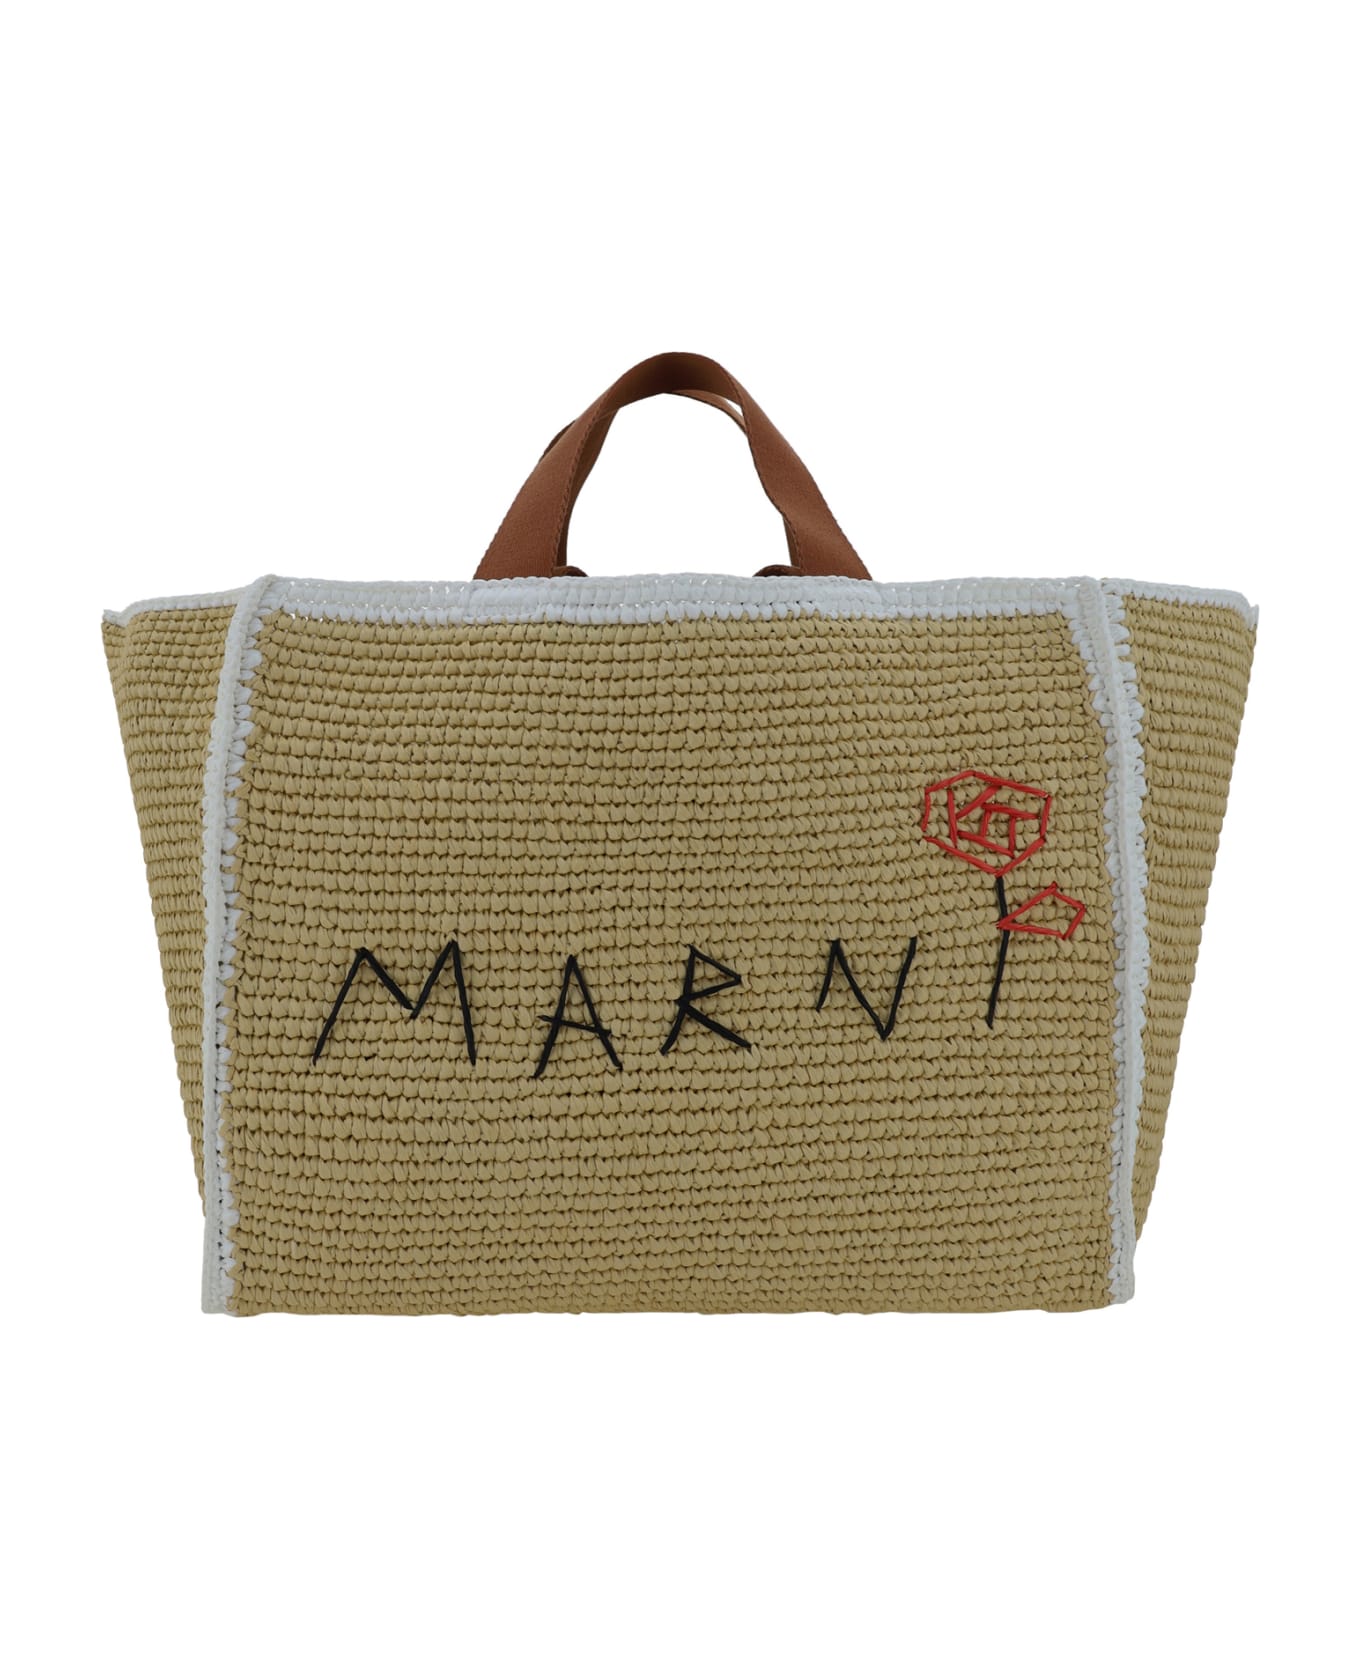 Marni Tote Sillo Medium Handbag - Natural